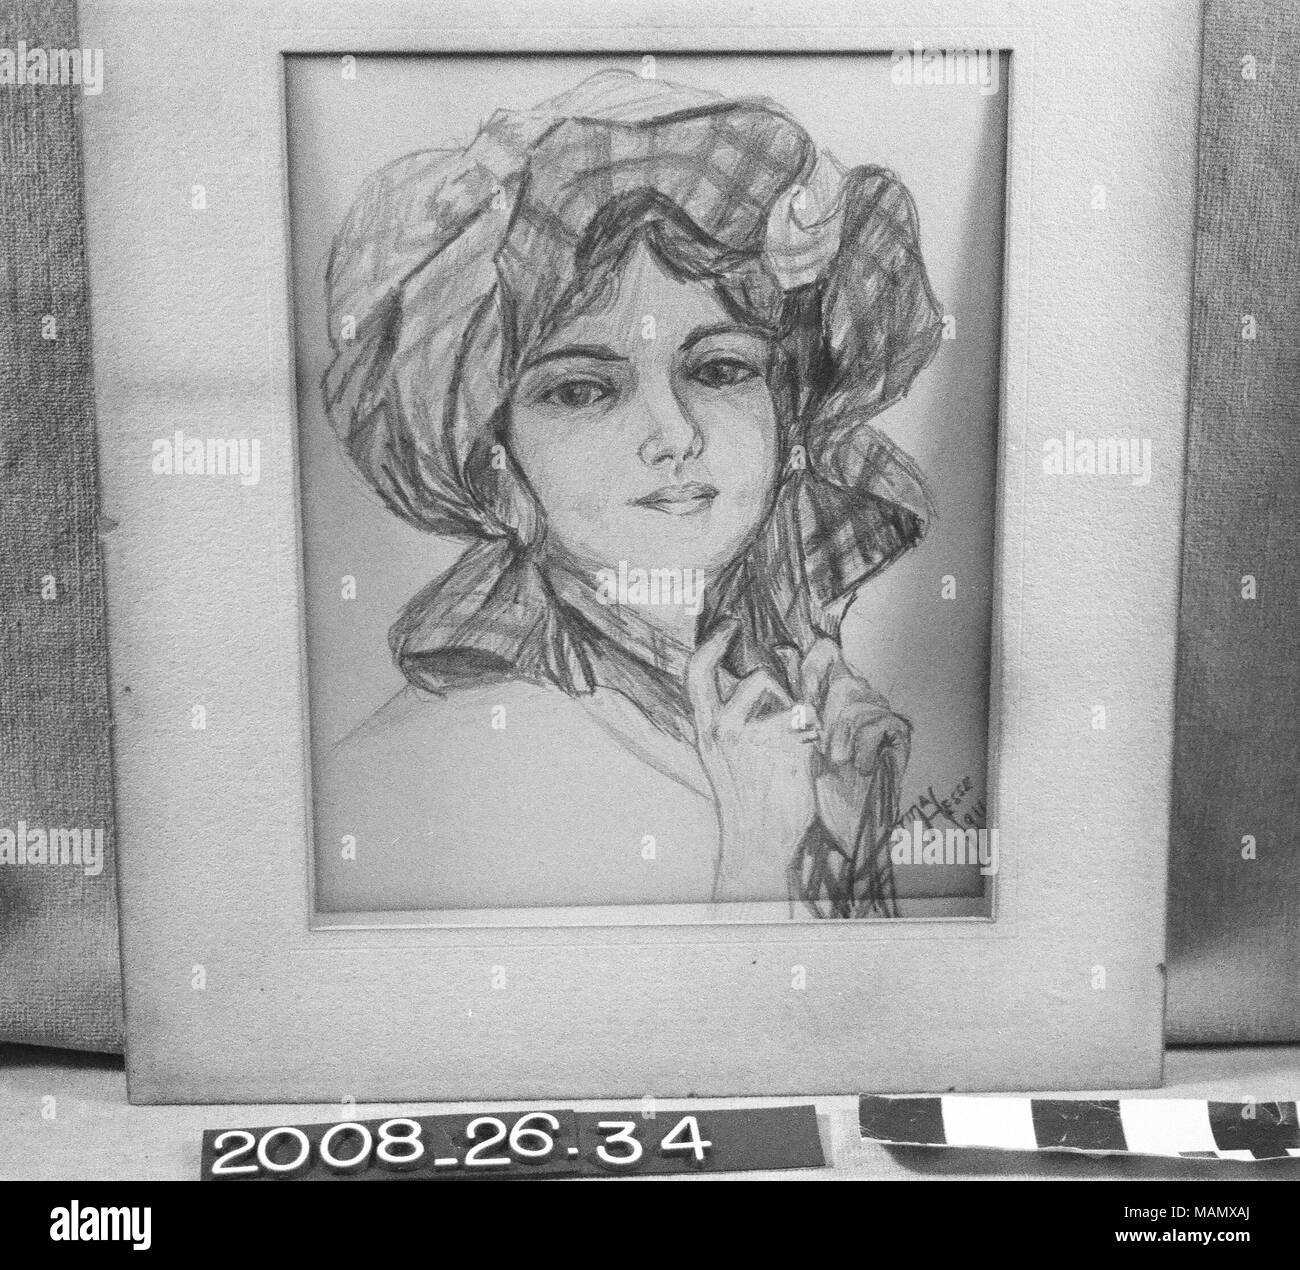 Dessin au crayon est profil de femme en bonnet Titre : Portrait de femme en Floppy Hat, dessin au crayon d'Irma Hesse . 1911. Irma Hesse Banque D'Images